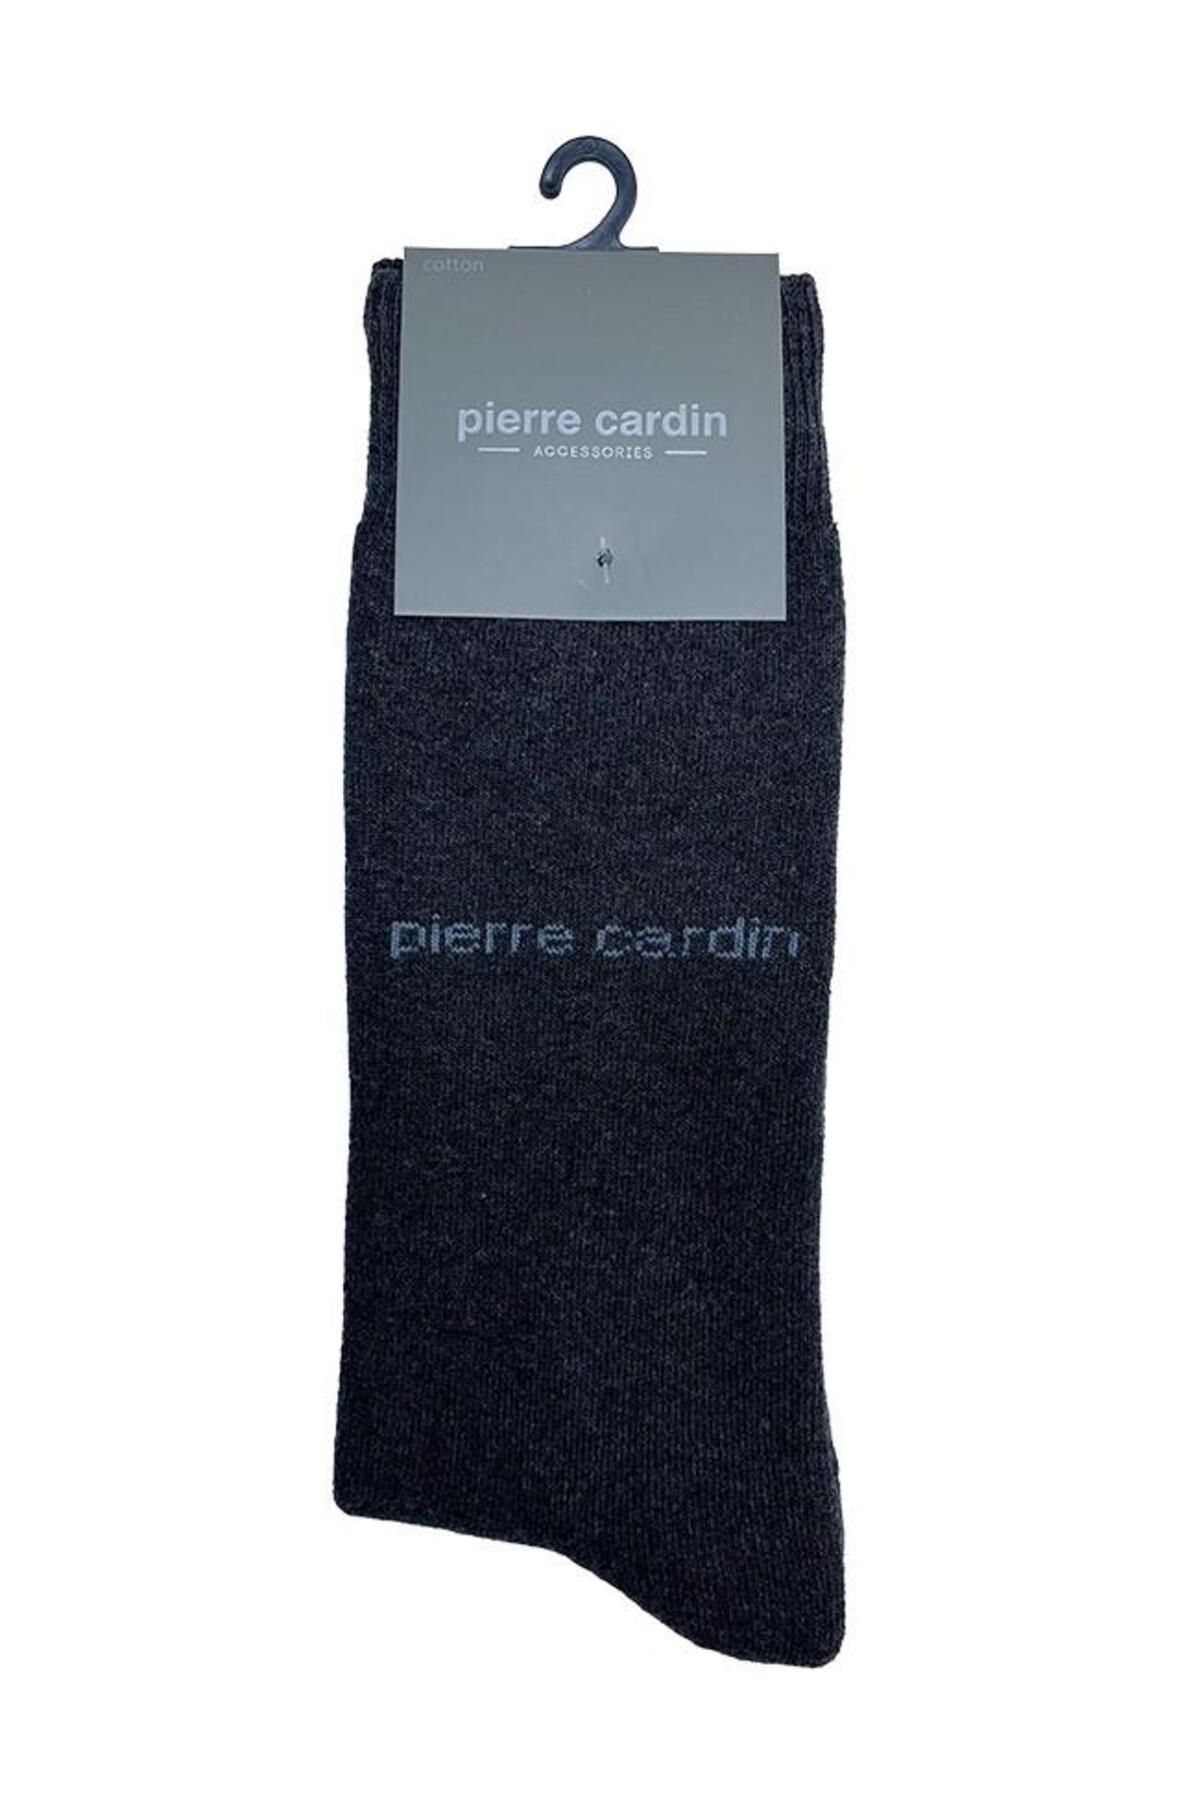 Pierre Cardin 527 Termal Havlu Erkek Çorap